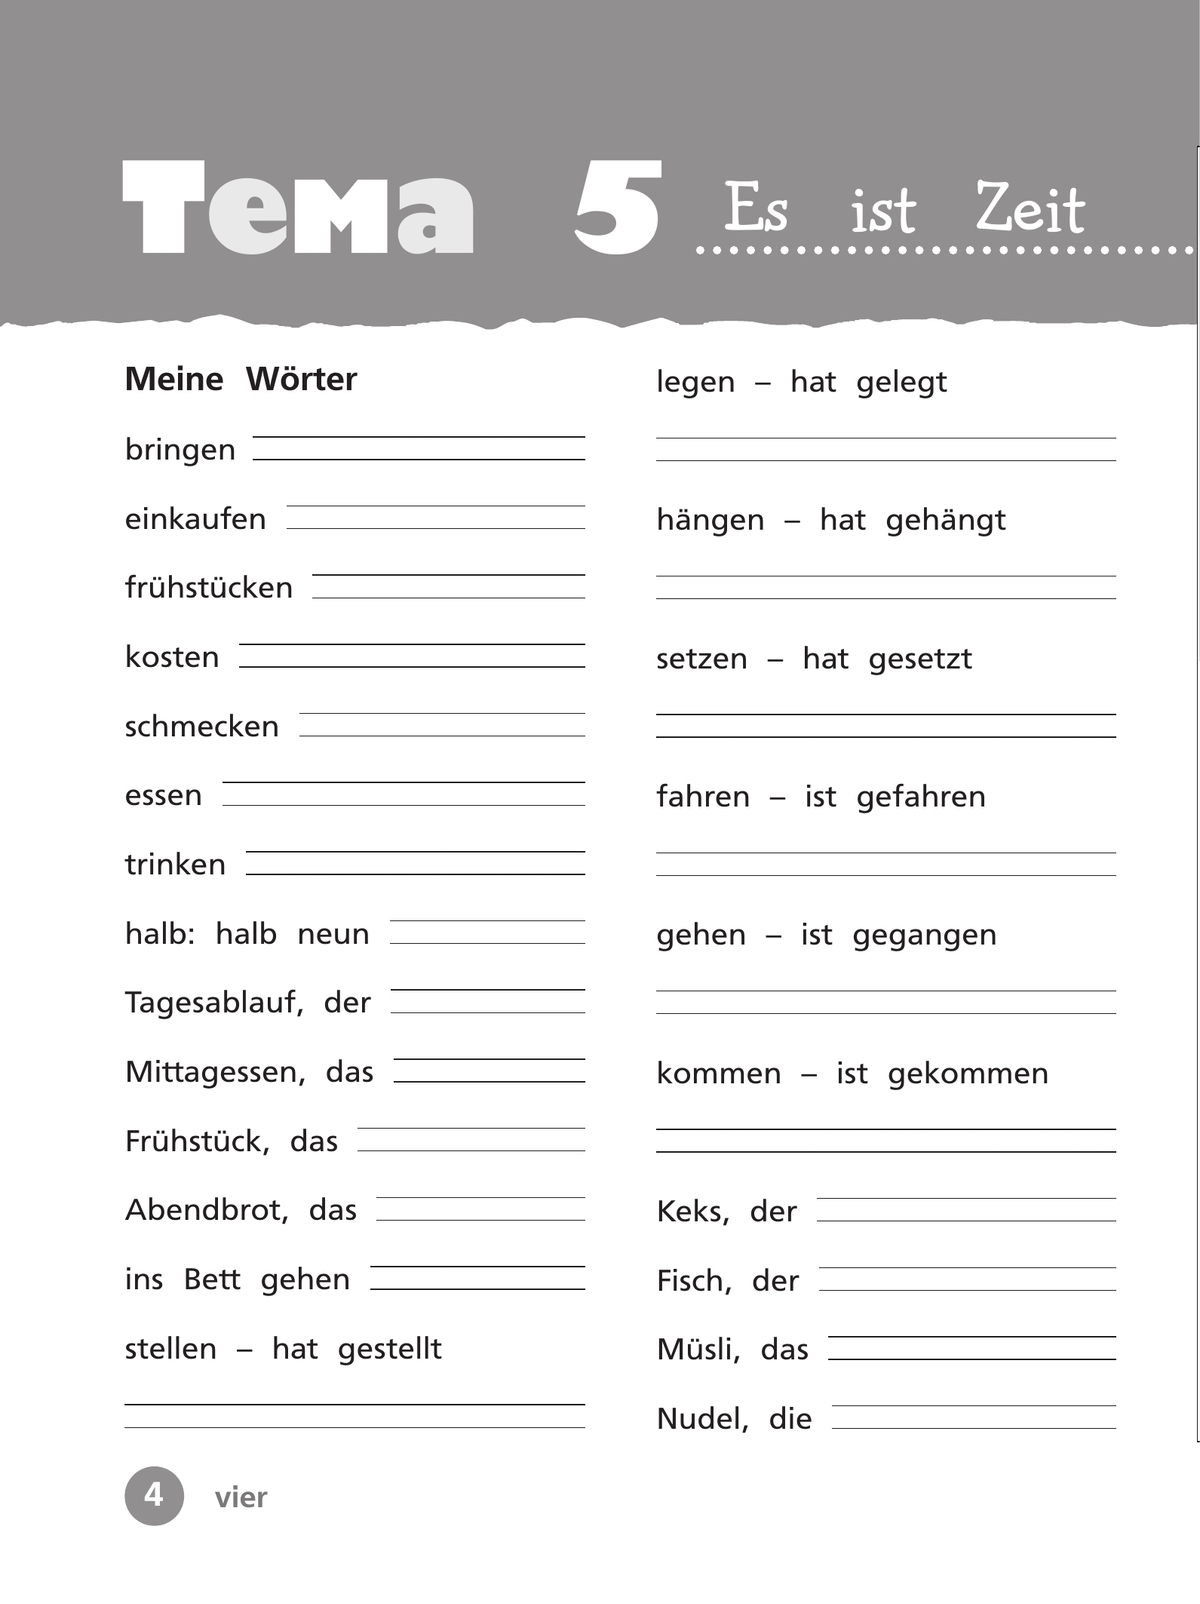 Немецкий язык. Рабочая тетрадь. 3 класс В 2-х ч. Ч. 2 5